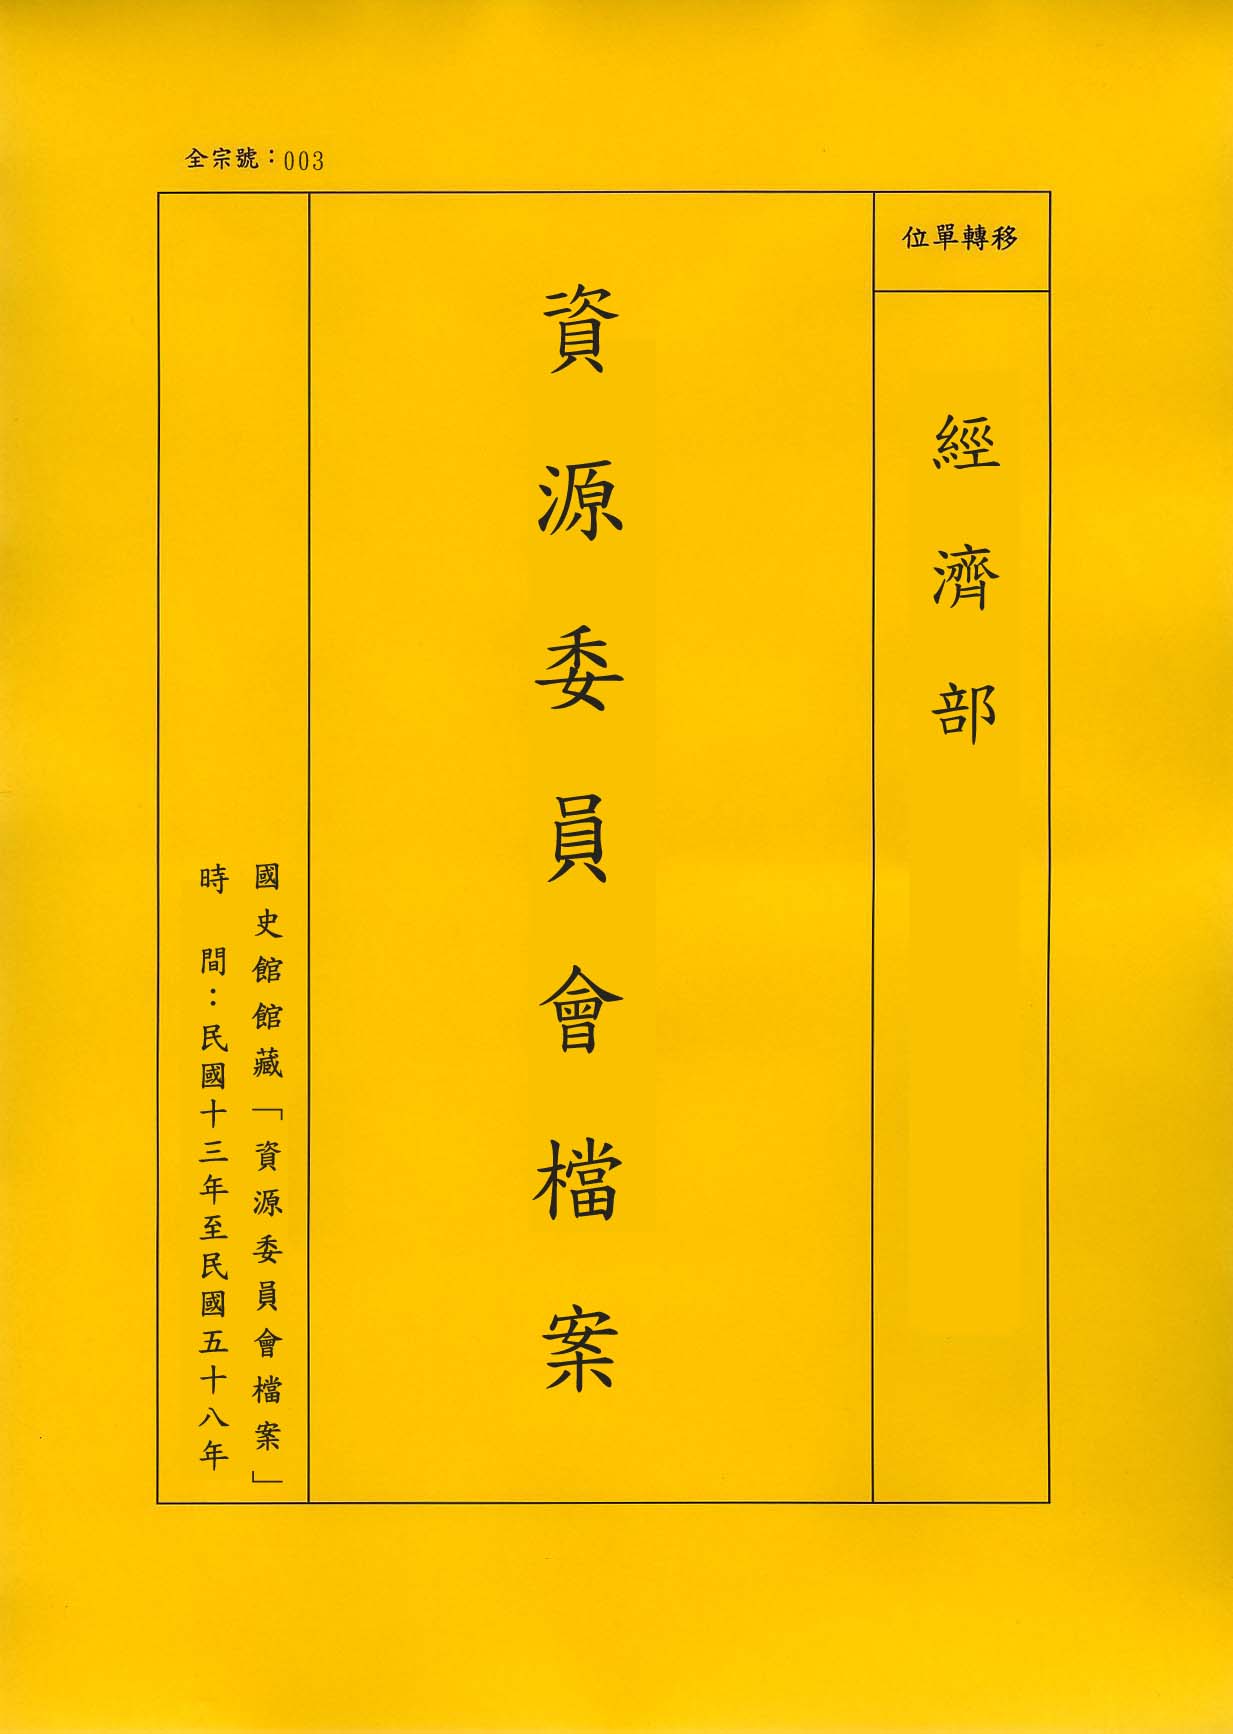 卷名:長江三峽水利開發計畫(一)(003-020200-0682)